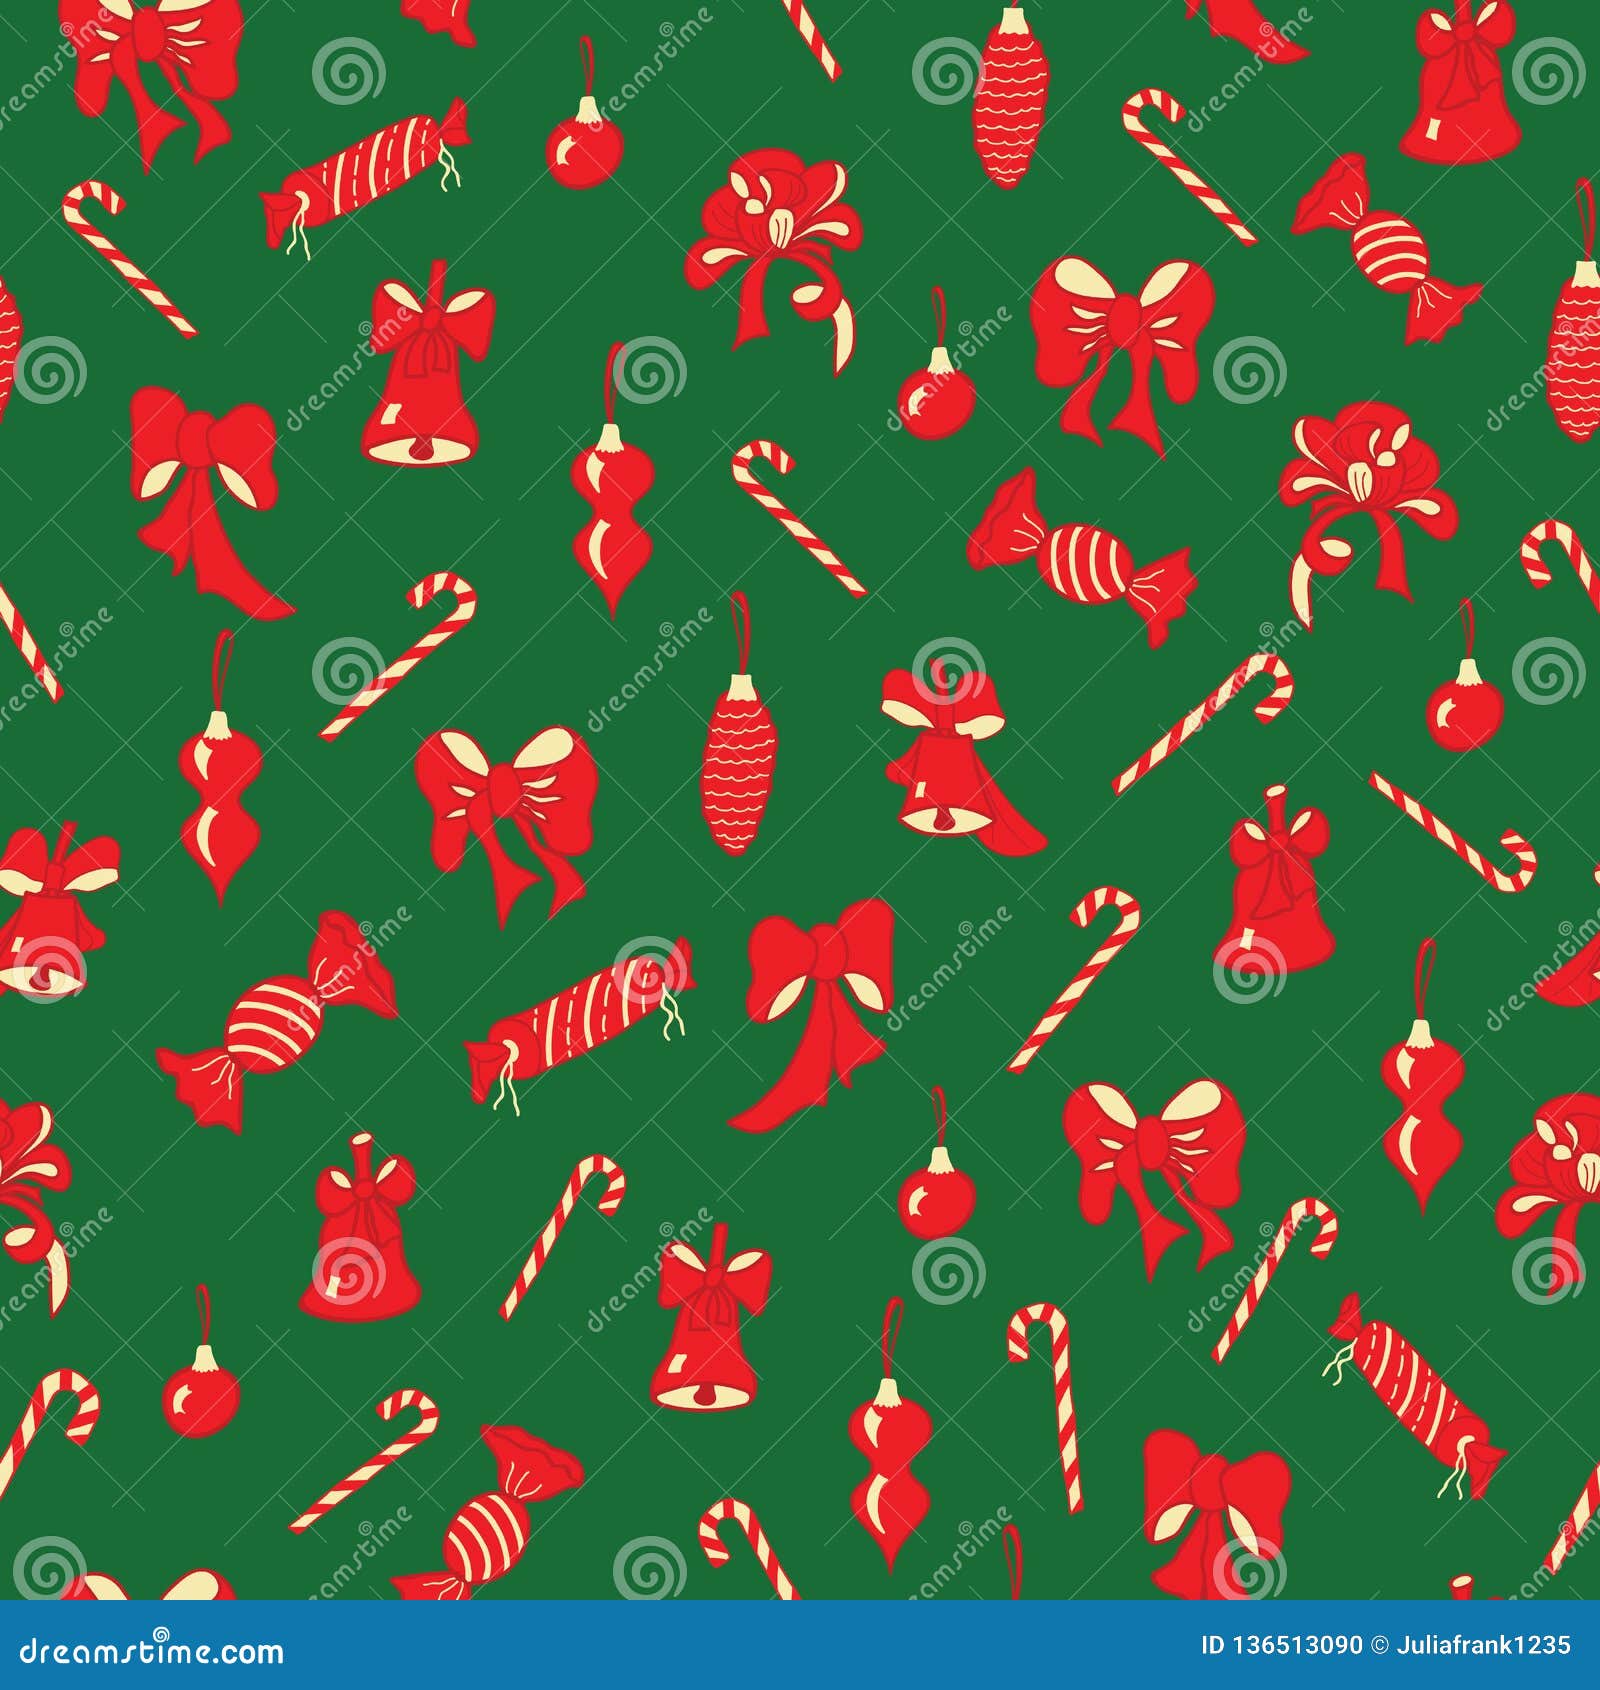 Kerstmisbogen, klokken, suikergoed naadloos patroon. De vector groene achtergrond van het Kerstmis naadloze patroon met rood bogen, ornamenten, klokken, suikergoed en suikergoedriet Perfectioneer voor Kerstmis en Nieuwjaargift verpakkend document, stof, decor